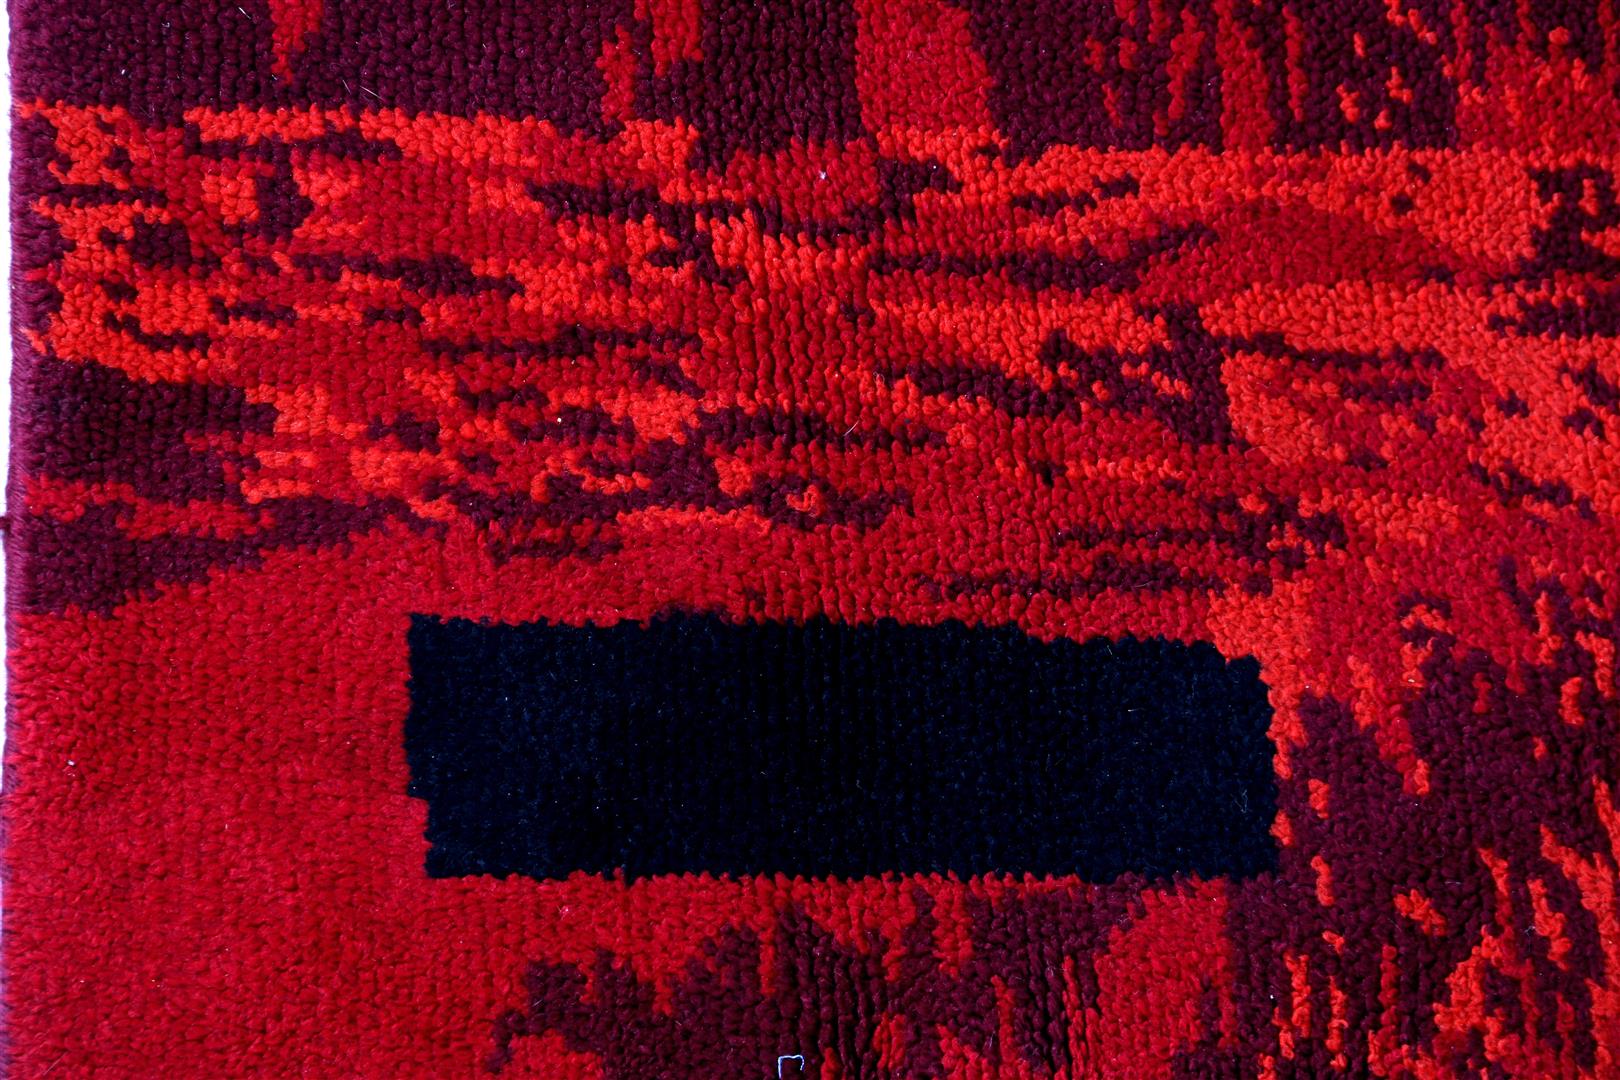 Hand-knotted oriental carpet - Bild 3 aus 4